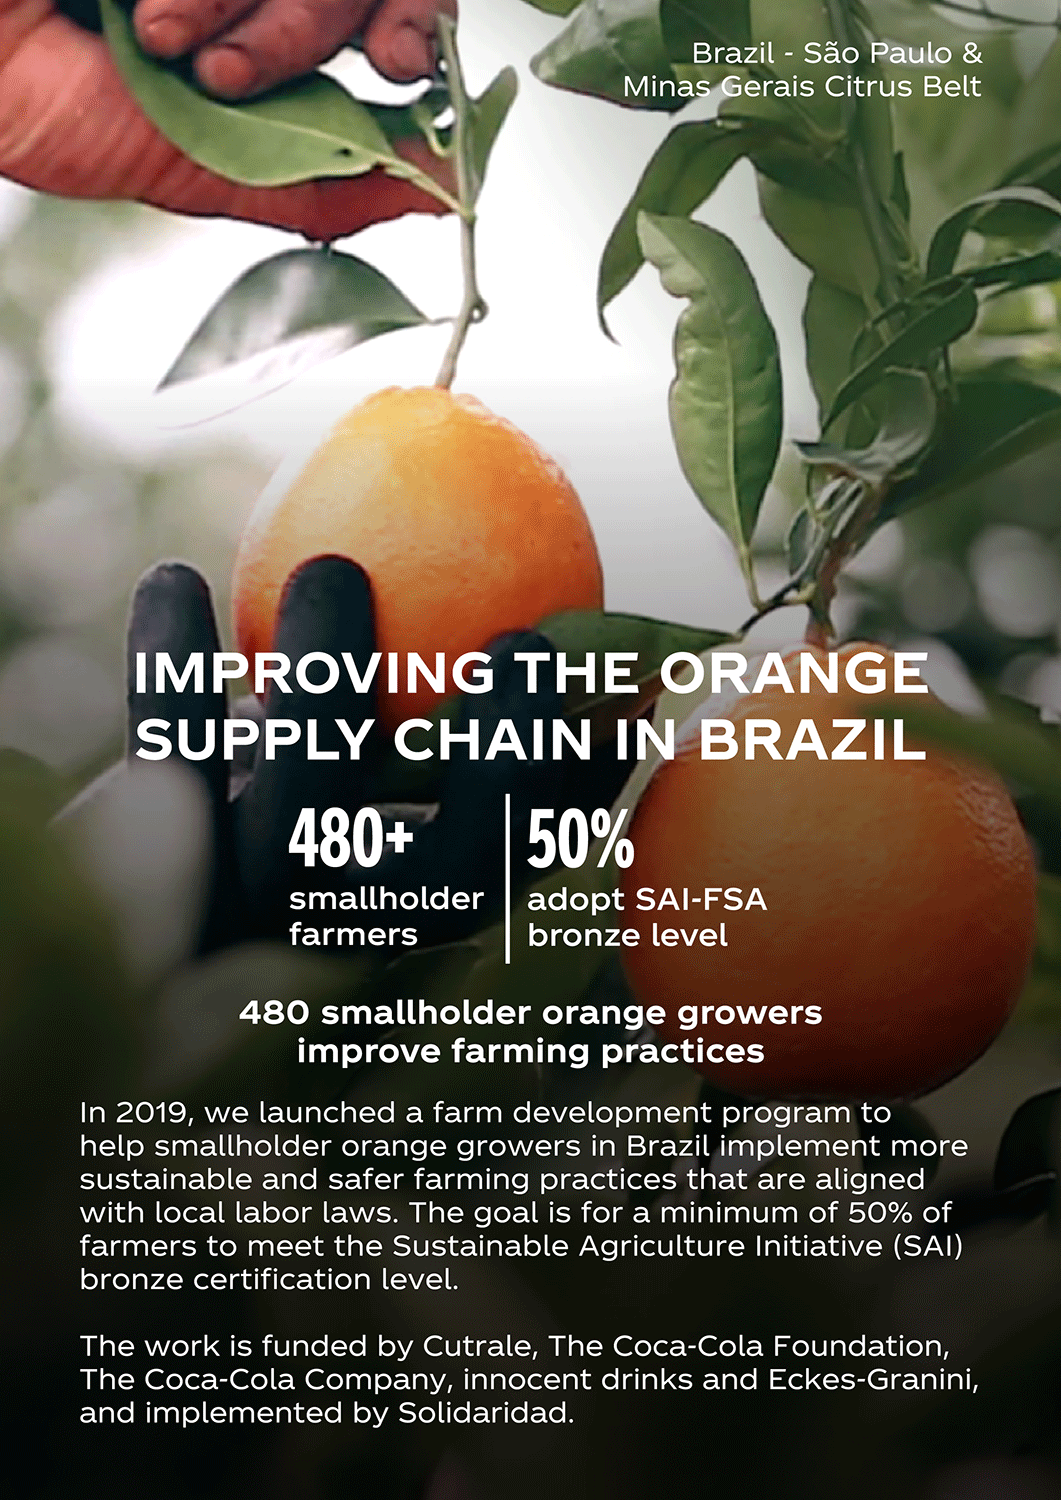 Orange supply in Brazil